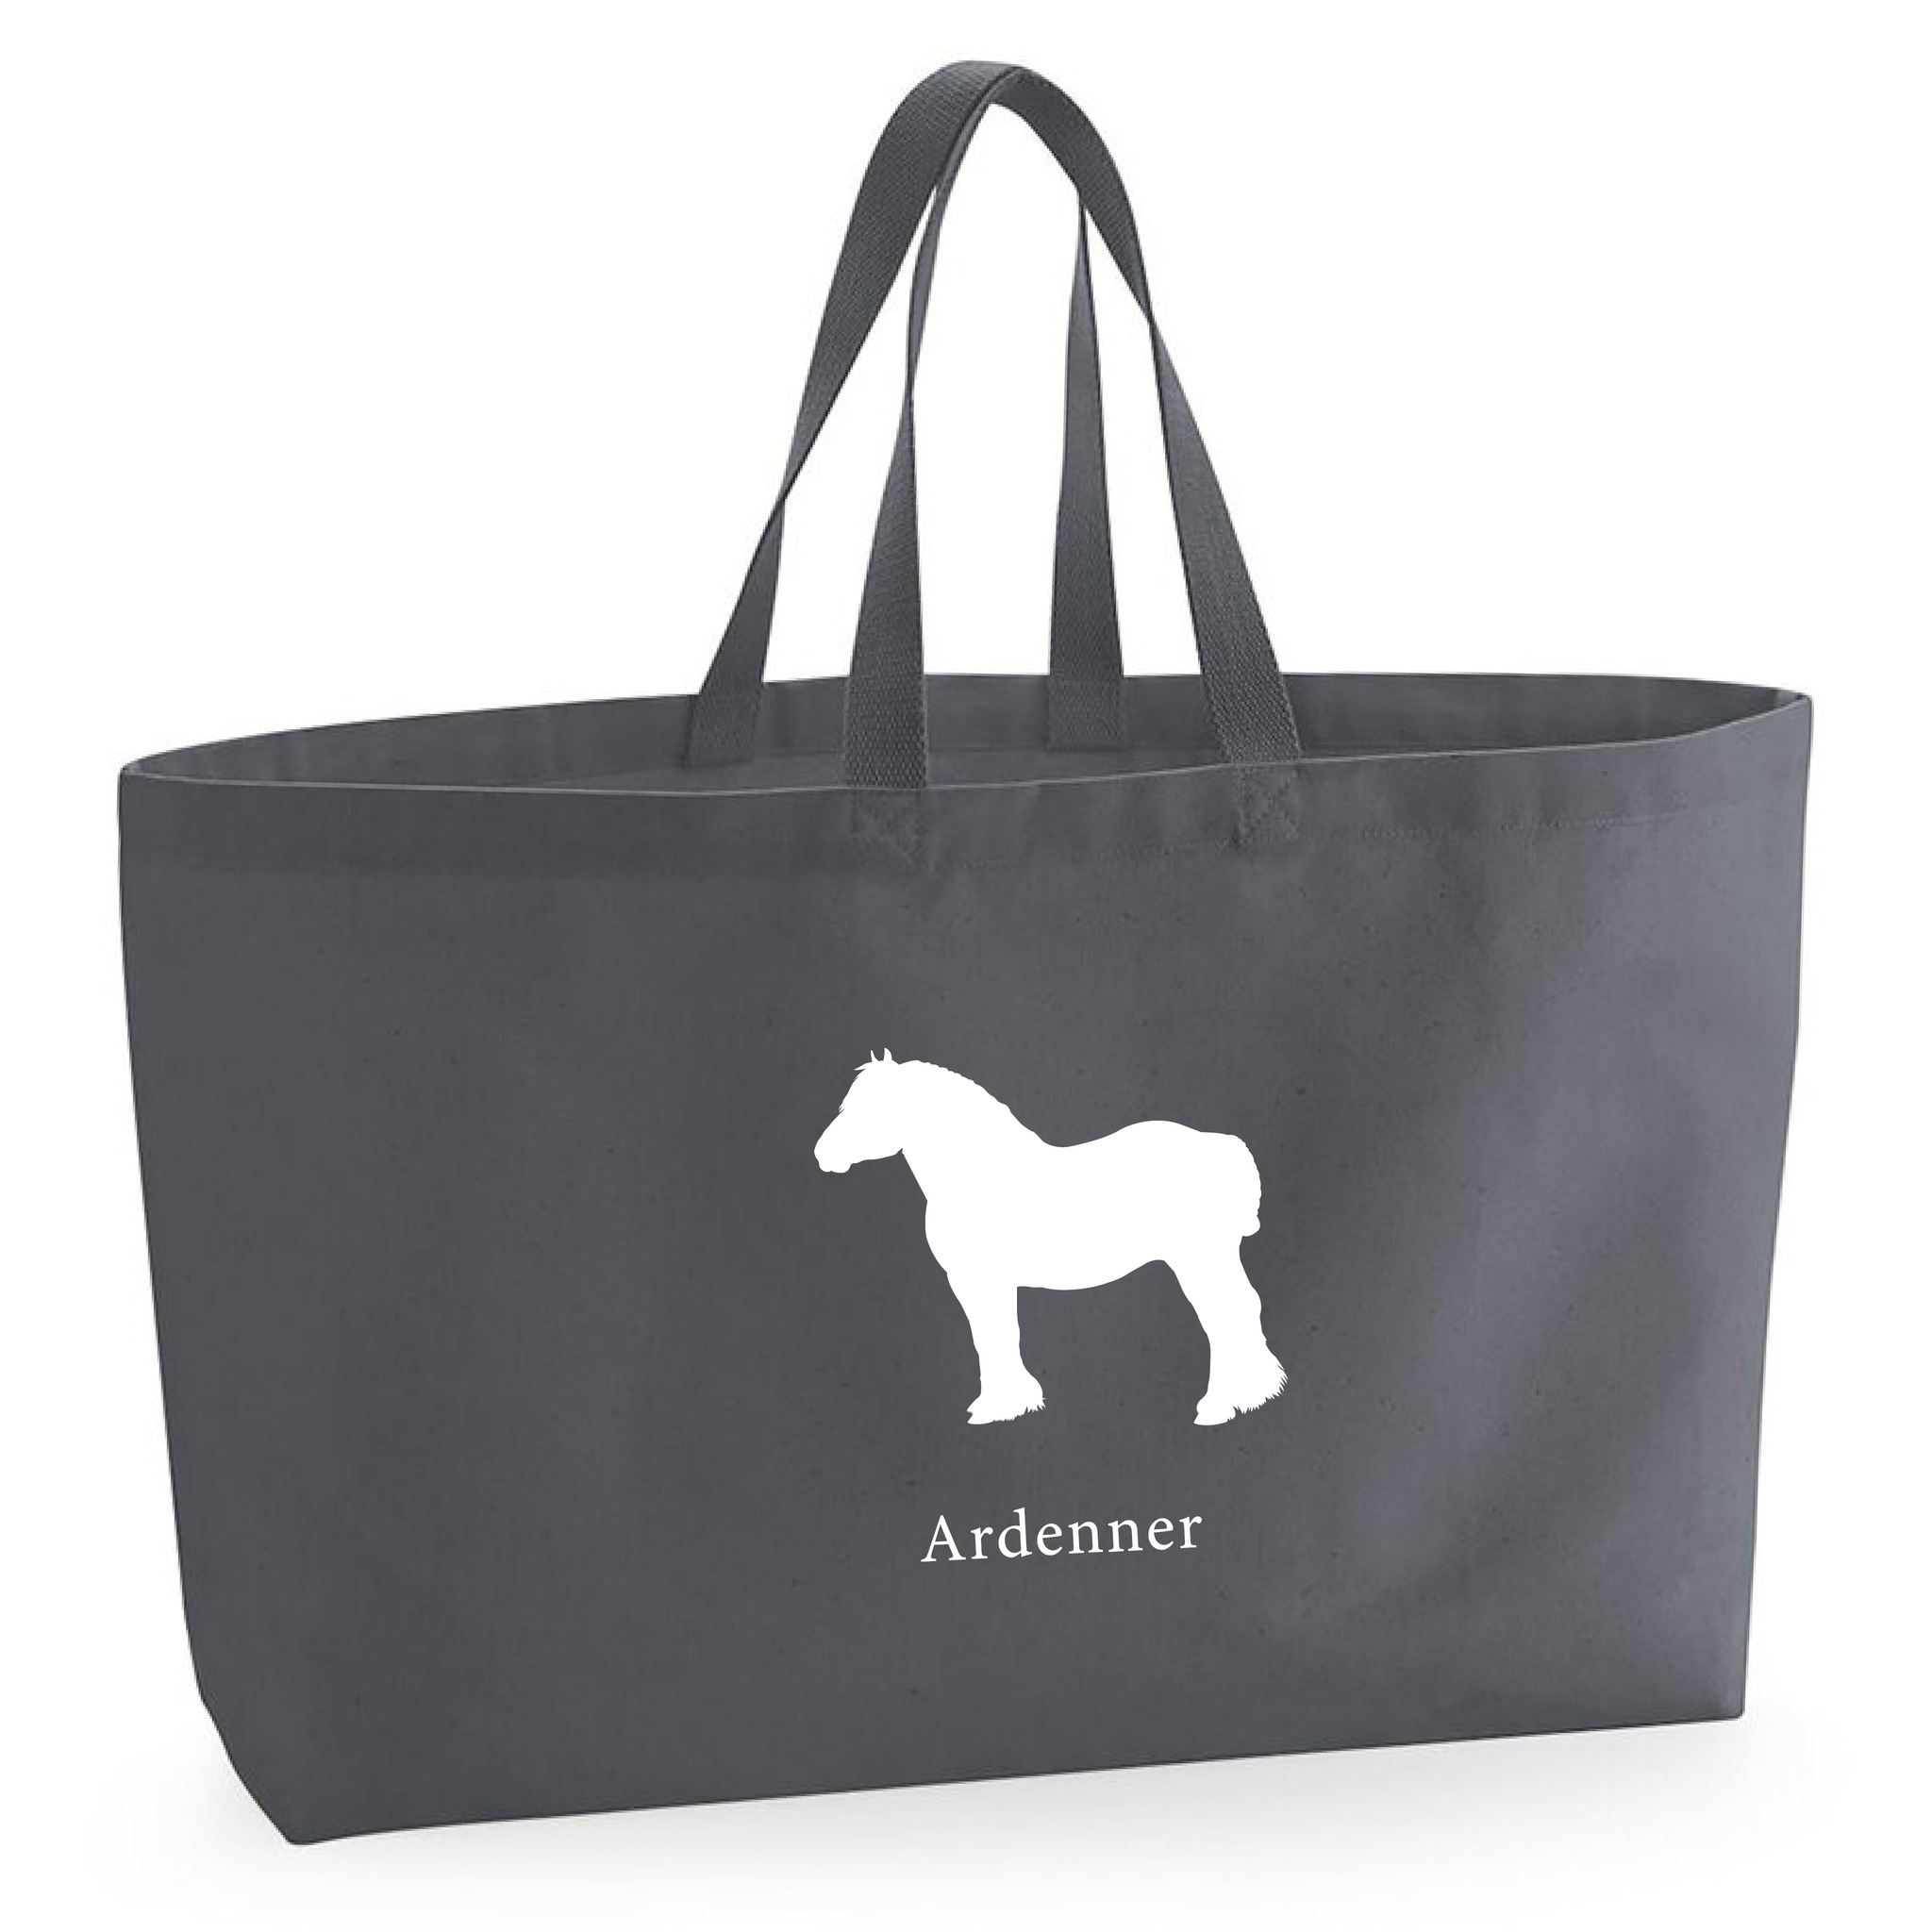 Tygkasse Ardenner - Oversized bag